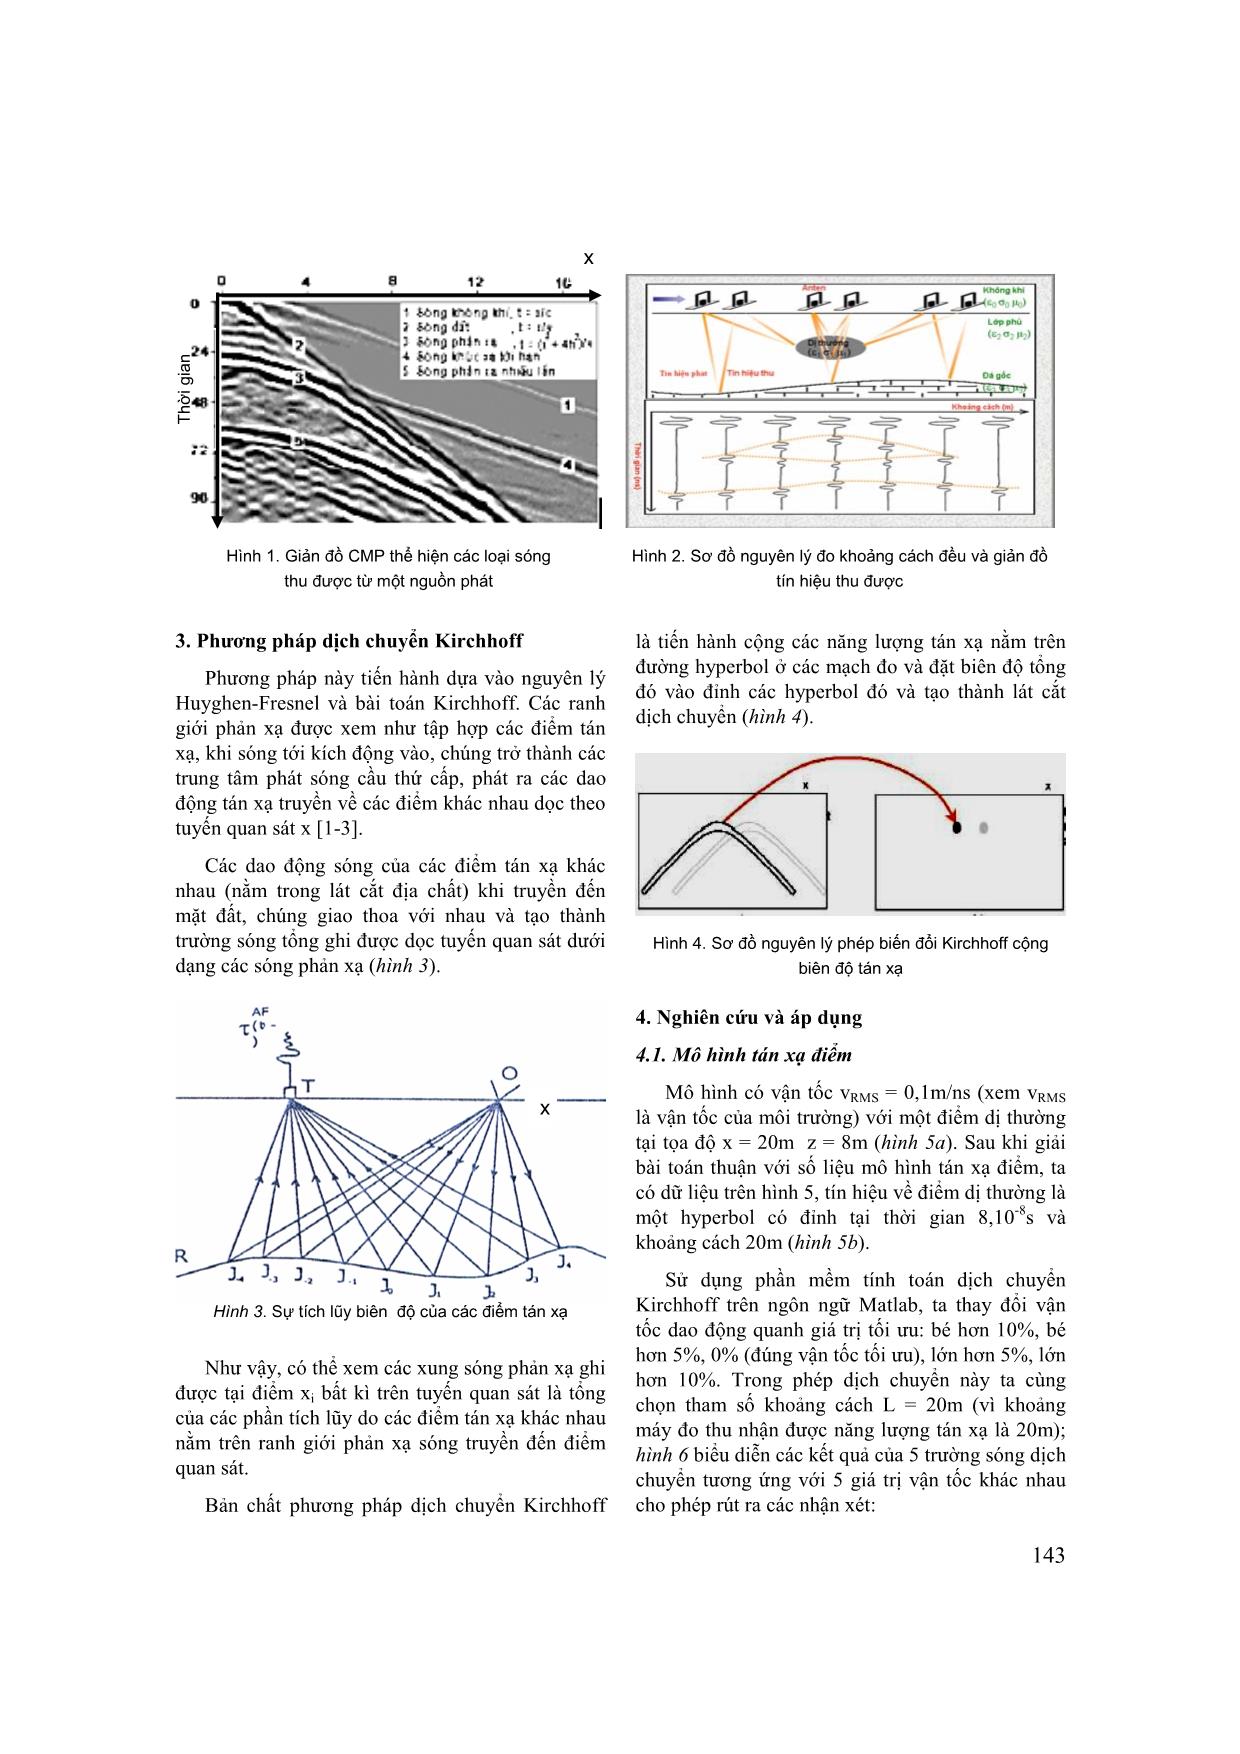 Nghiên cứu dịch chuyển kirchhoff để xác định mô hình vận tốc trong phương pháp điện từ tần số cao trang 2